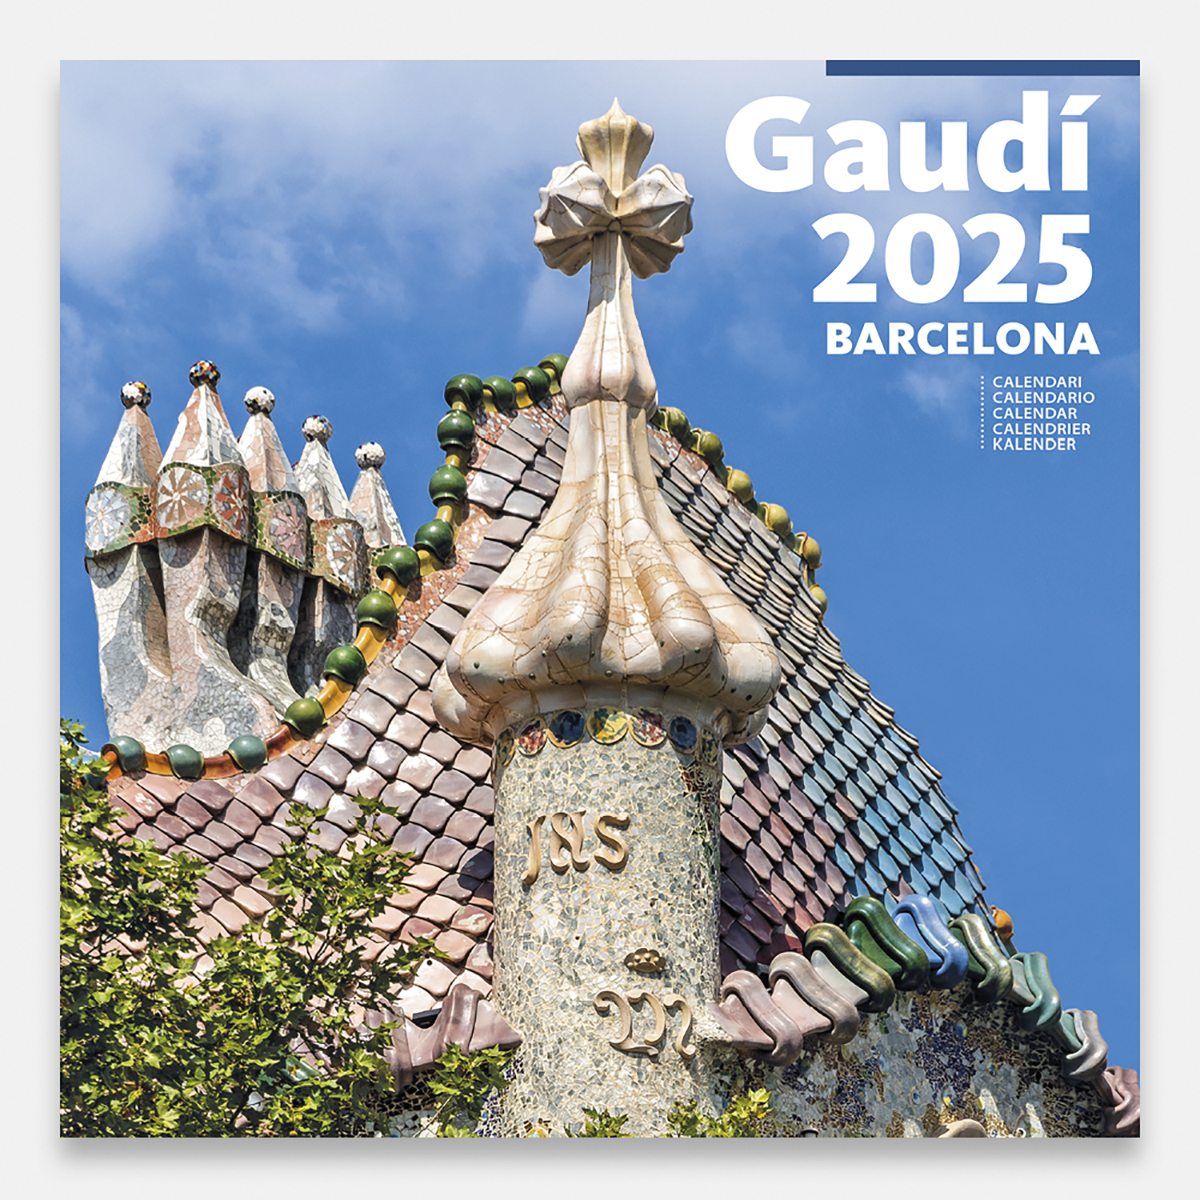 Calendario 2025 Gaudí-1 A (Batlló) 25gg1 a calendario pared 2025 gaudi batllo